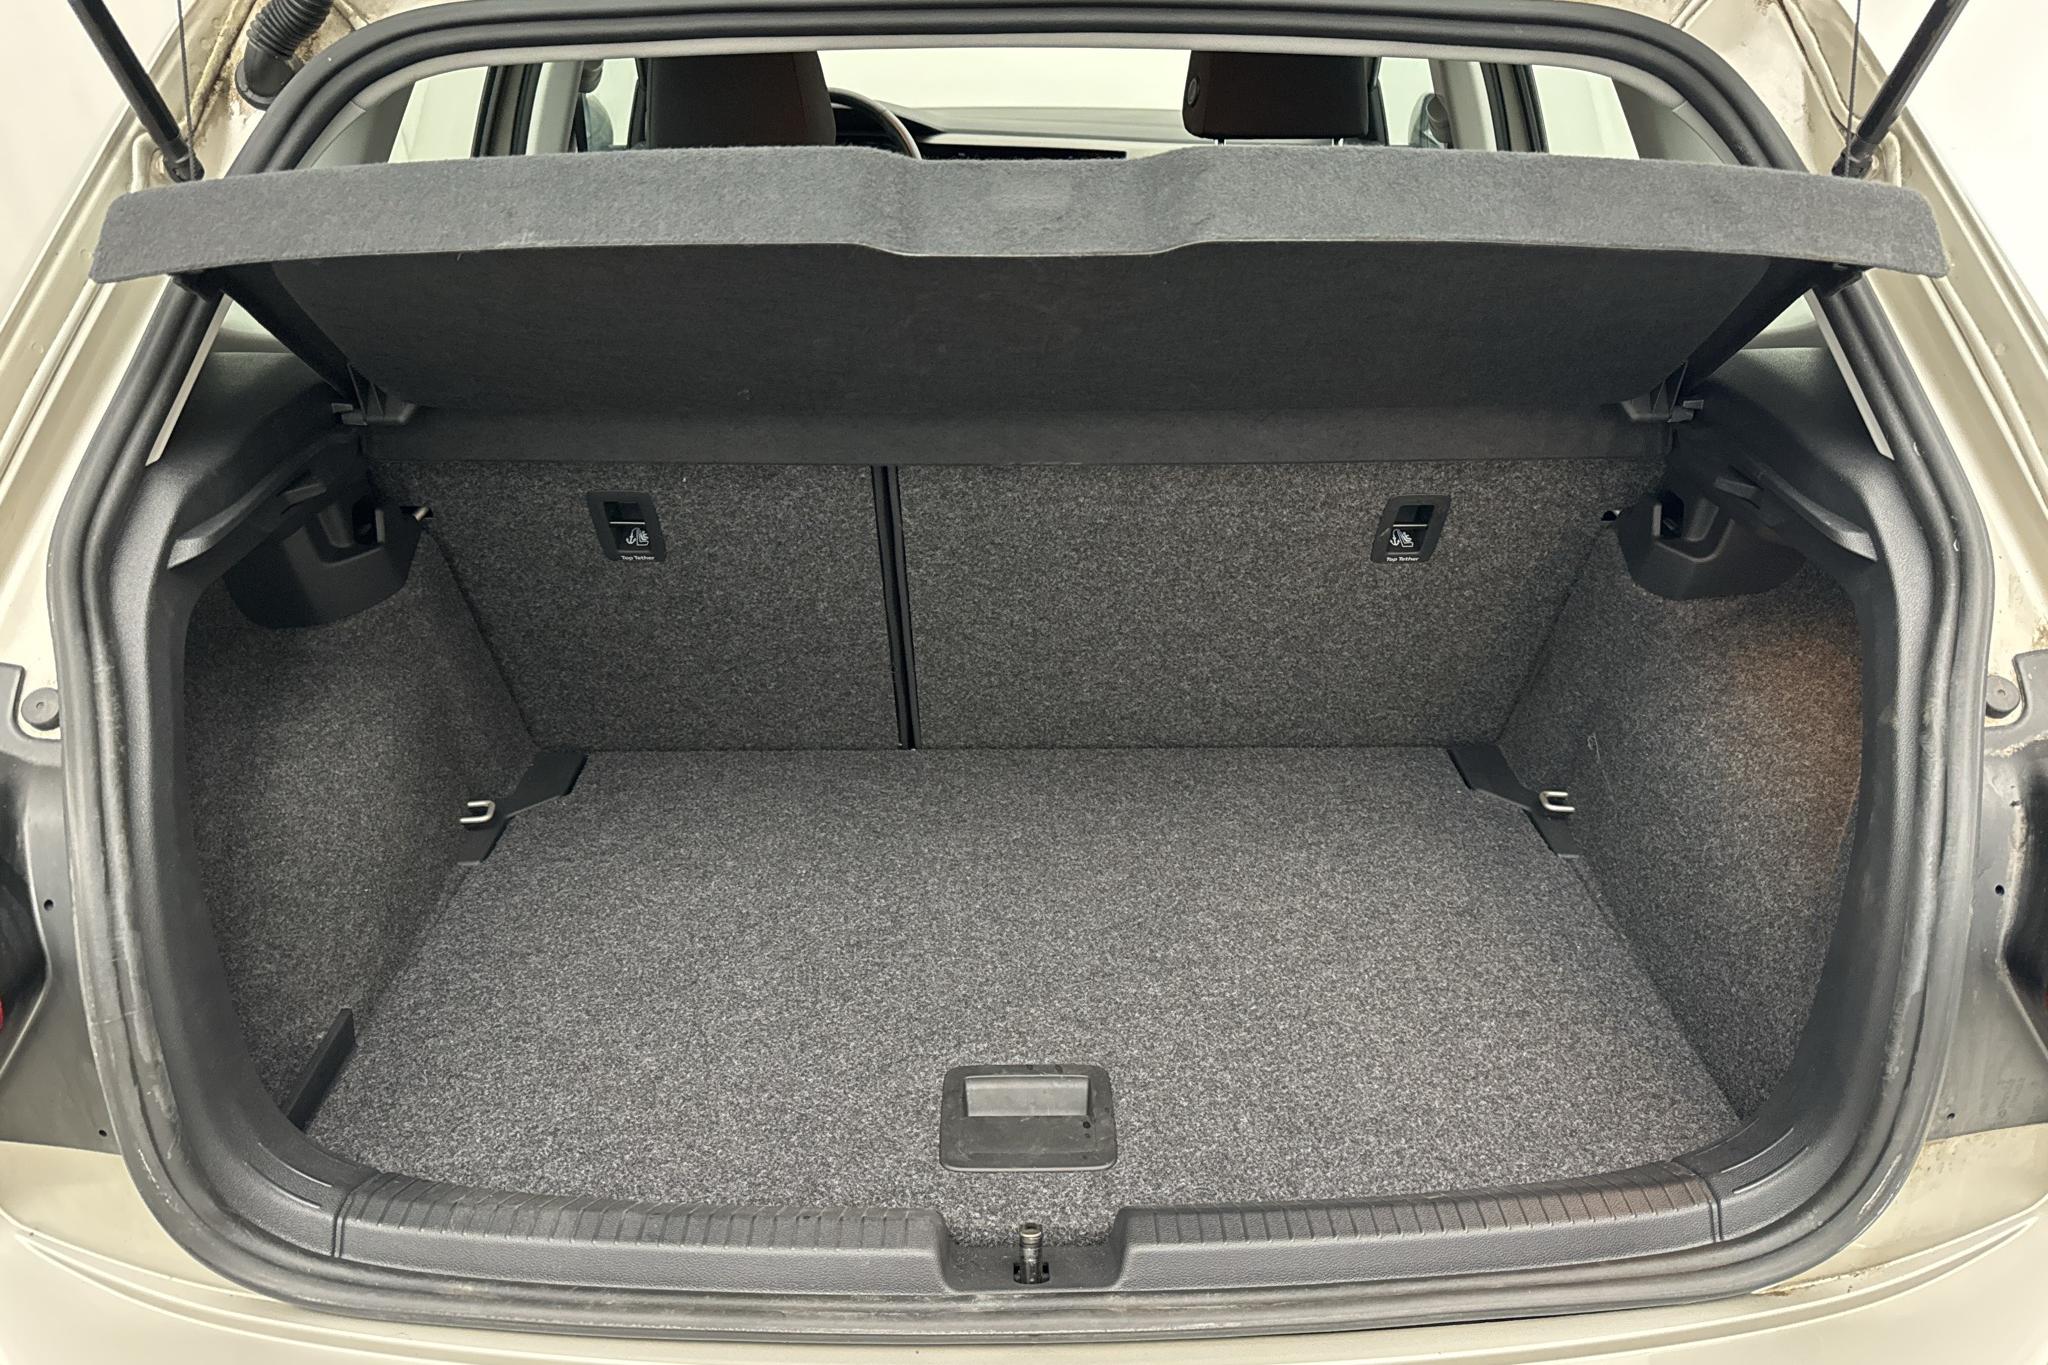 VW Polo 1.0 TSI 5dr (95hk) - 2 360 km - Manual - silver - 2018